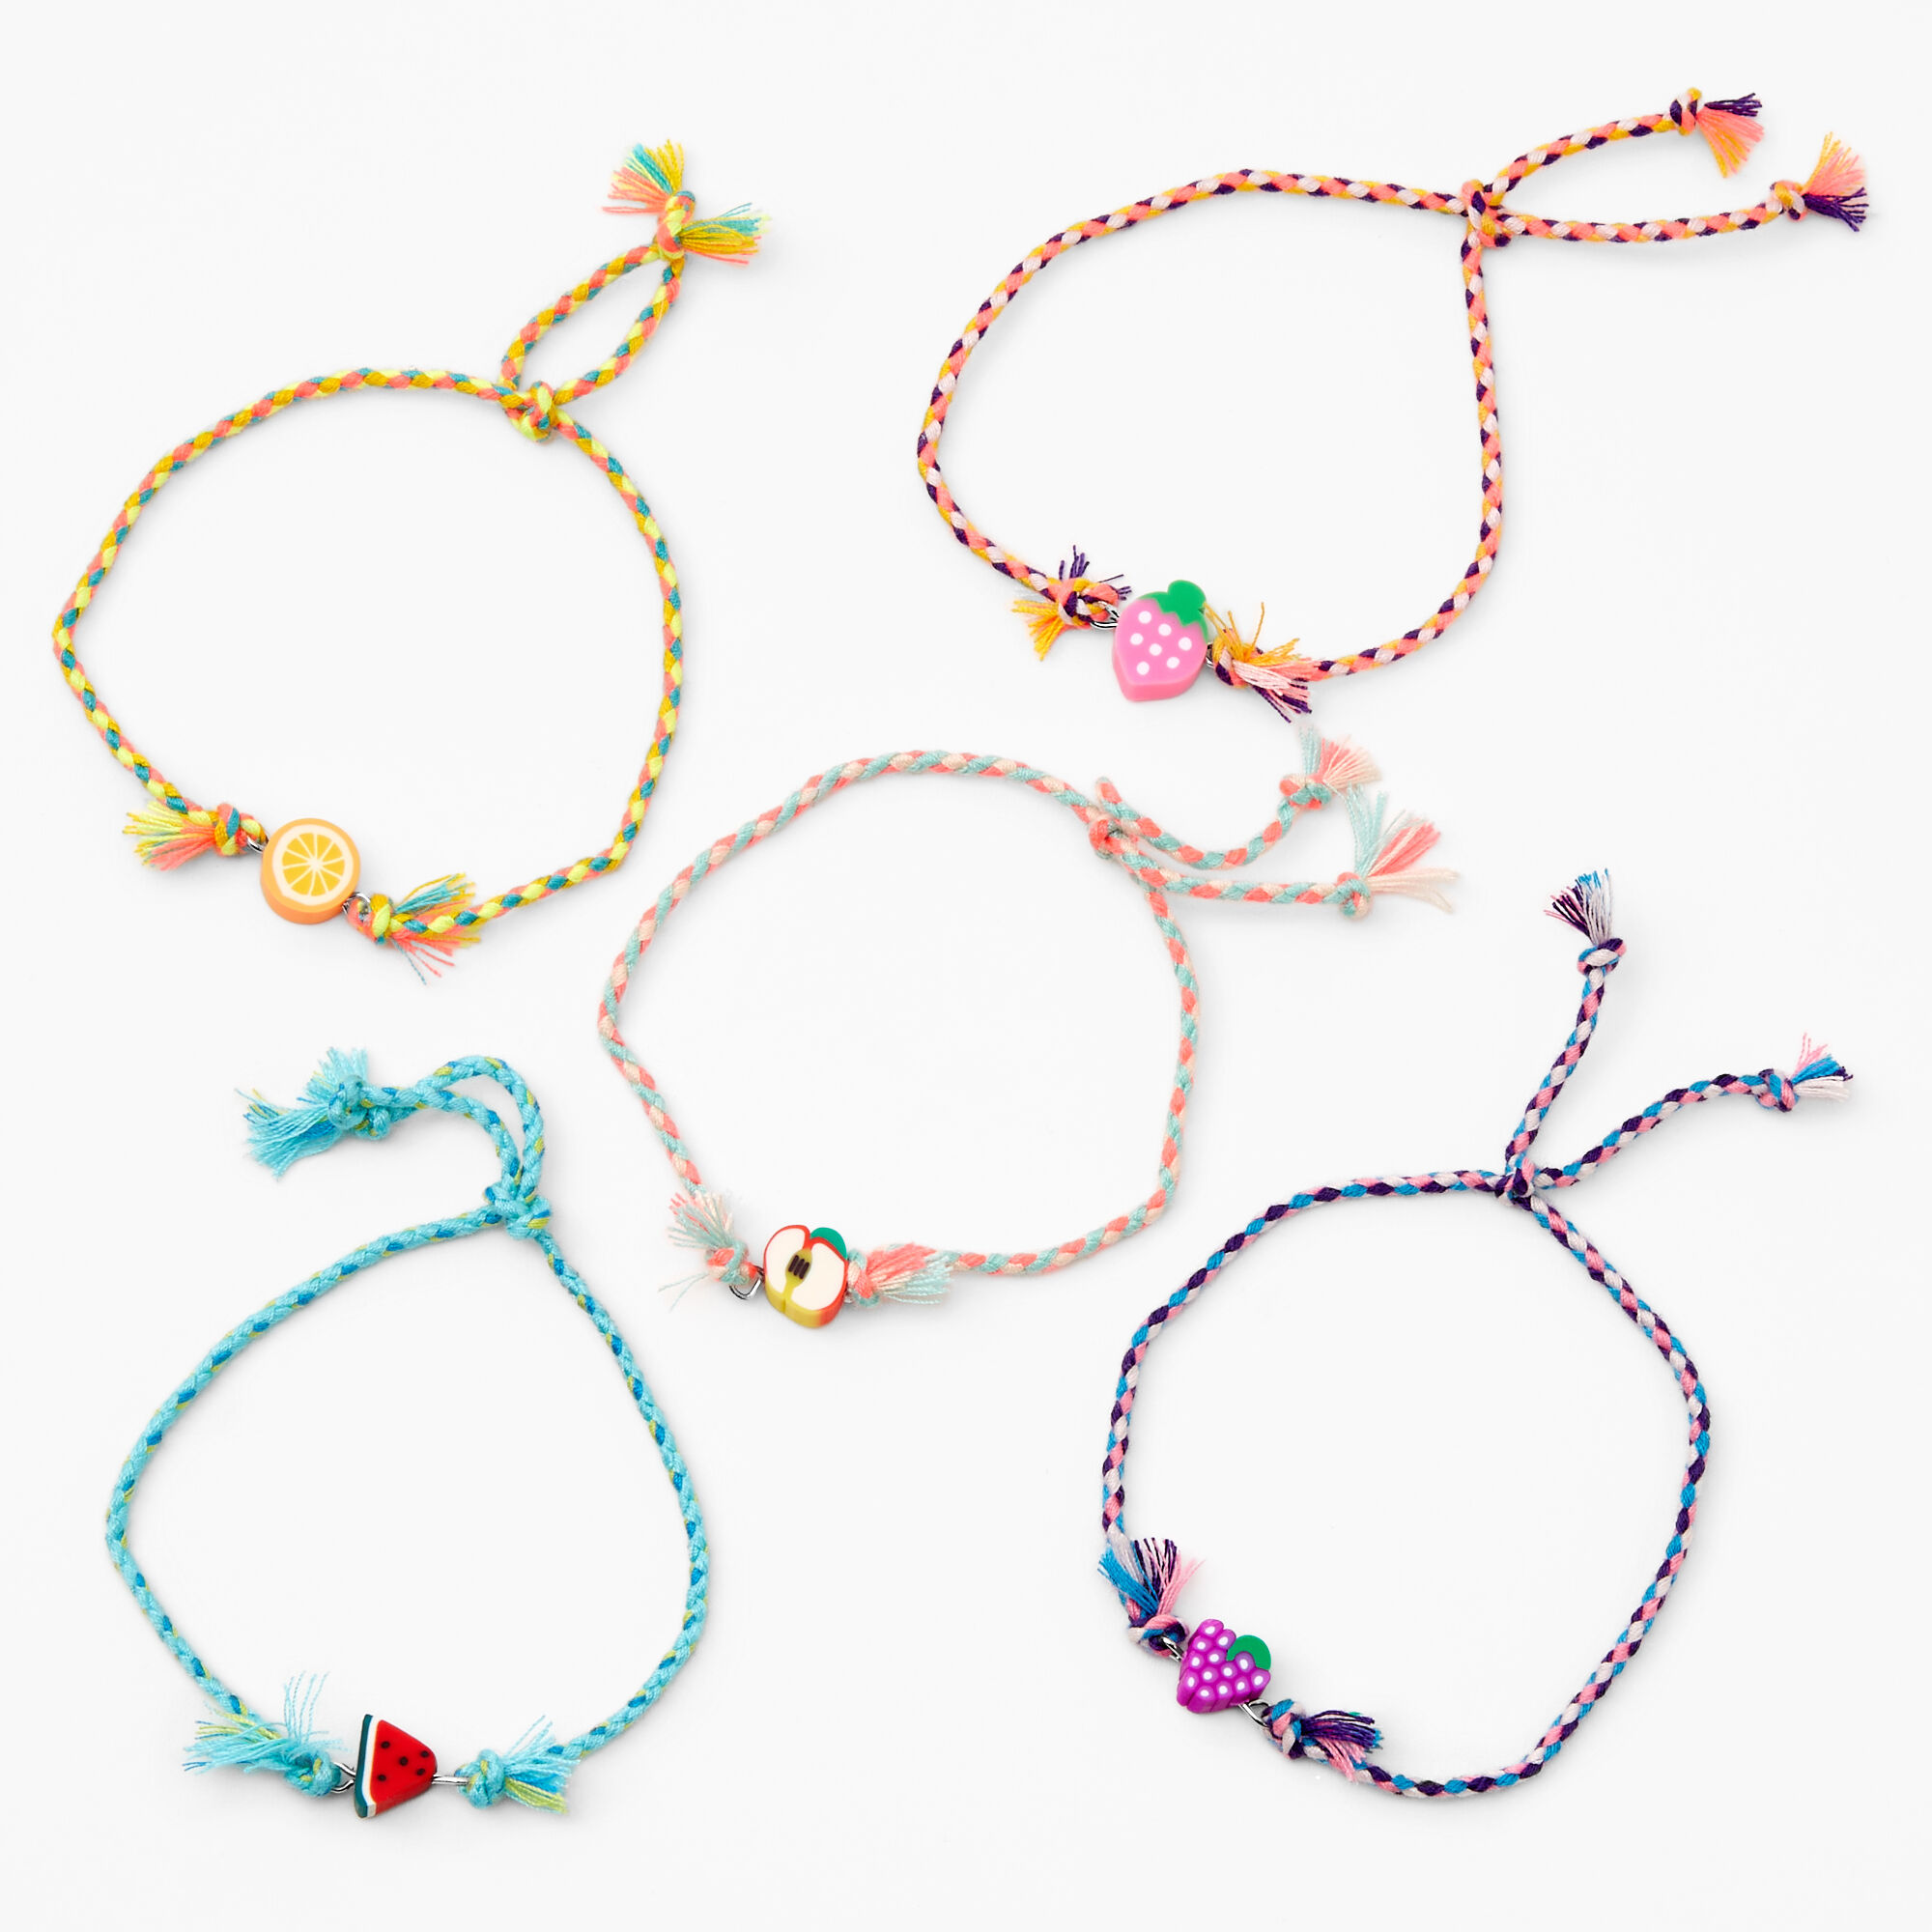 Claire's rainbow rhinestone beaded flower bracelet trio set nwt adj jewelry  | eBay